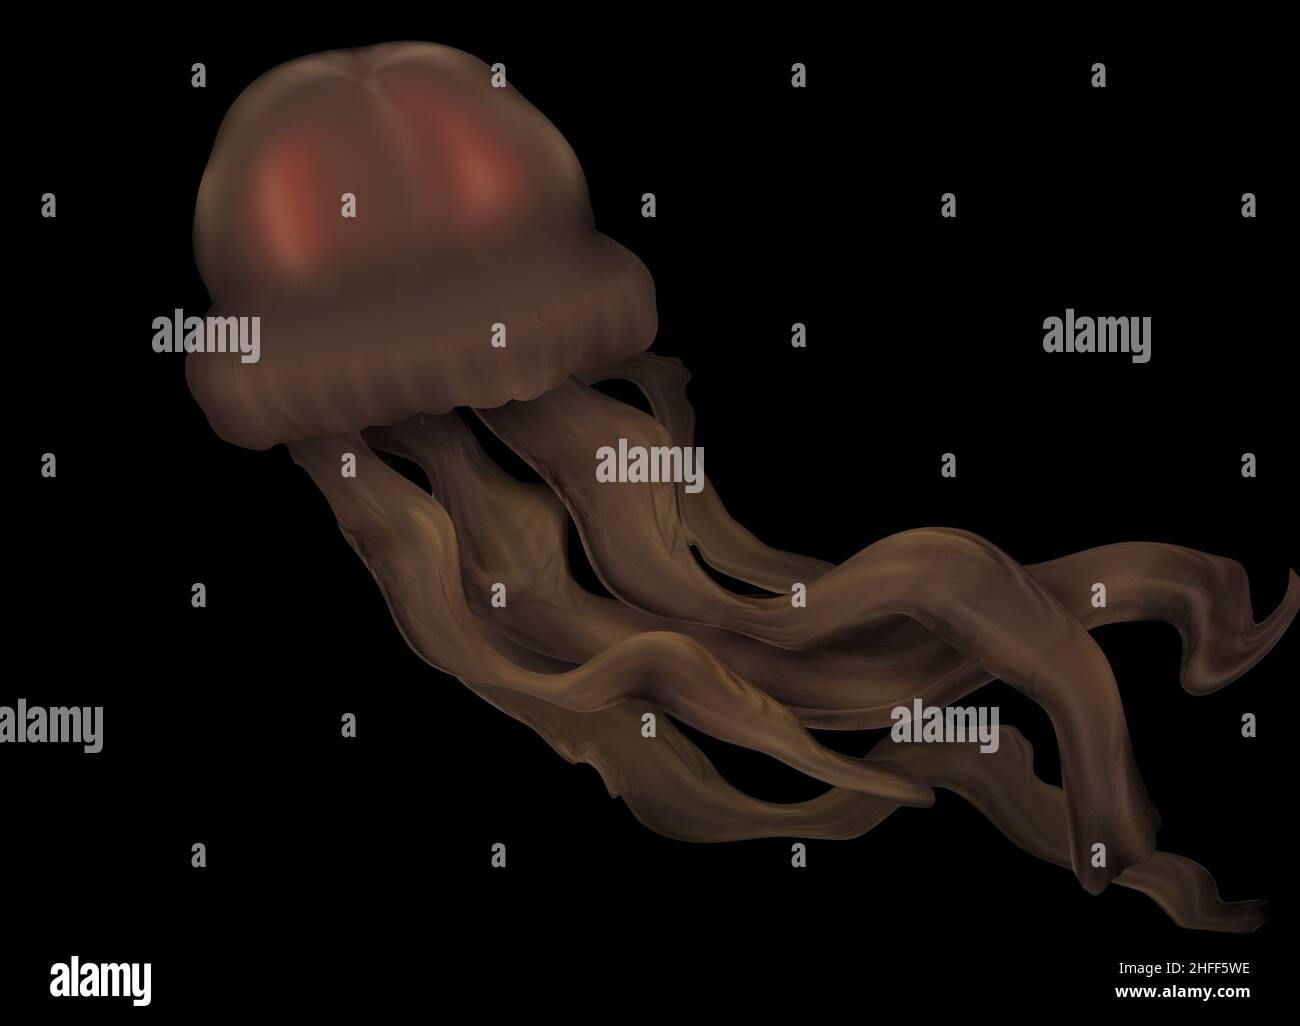 Méduse fantôme géante, Stygiomedusa gigantea, créature marine profonde.Méduses brunes aux tentacules longs, nouvelles espèces. Banque D'Images